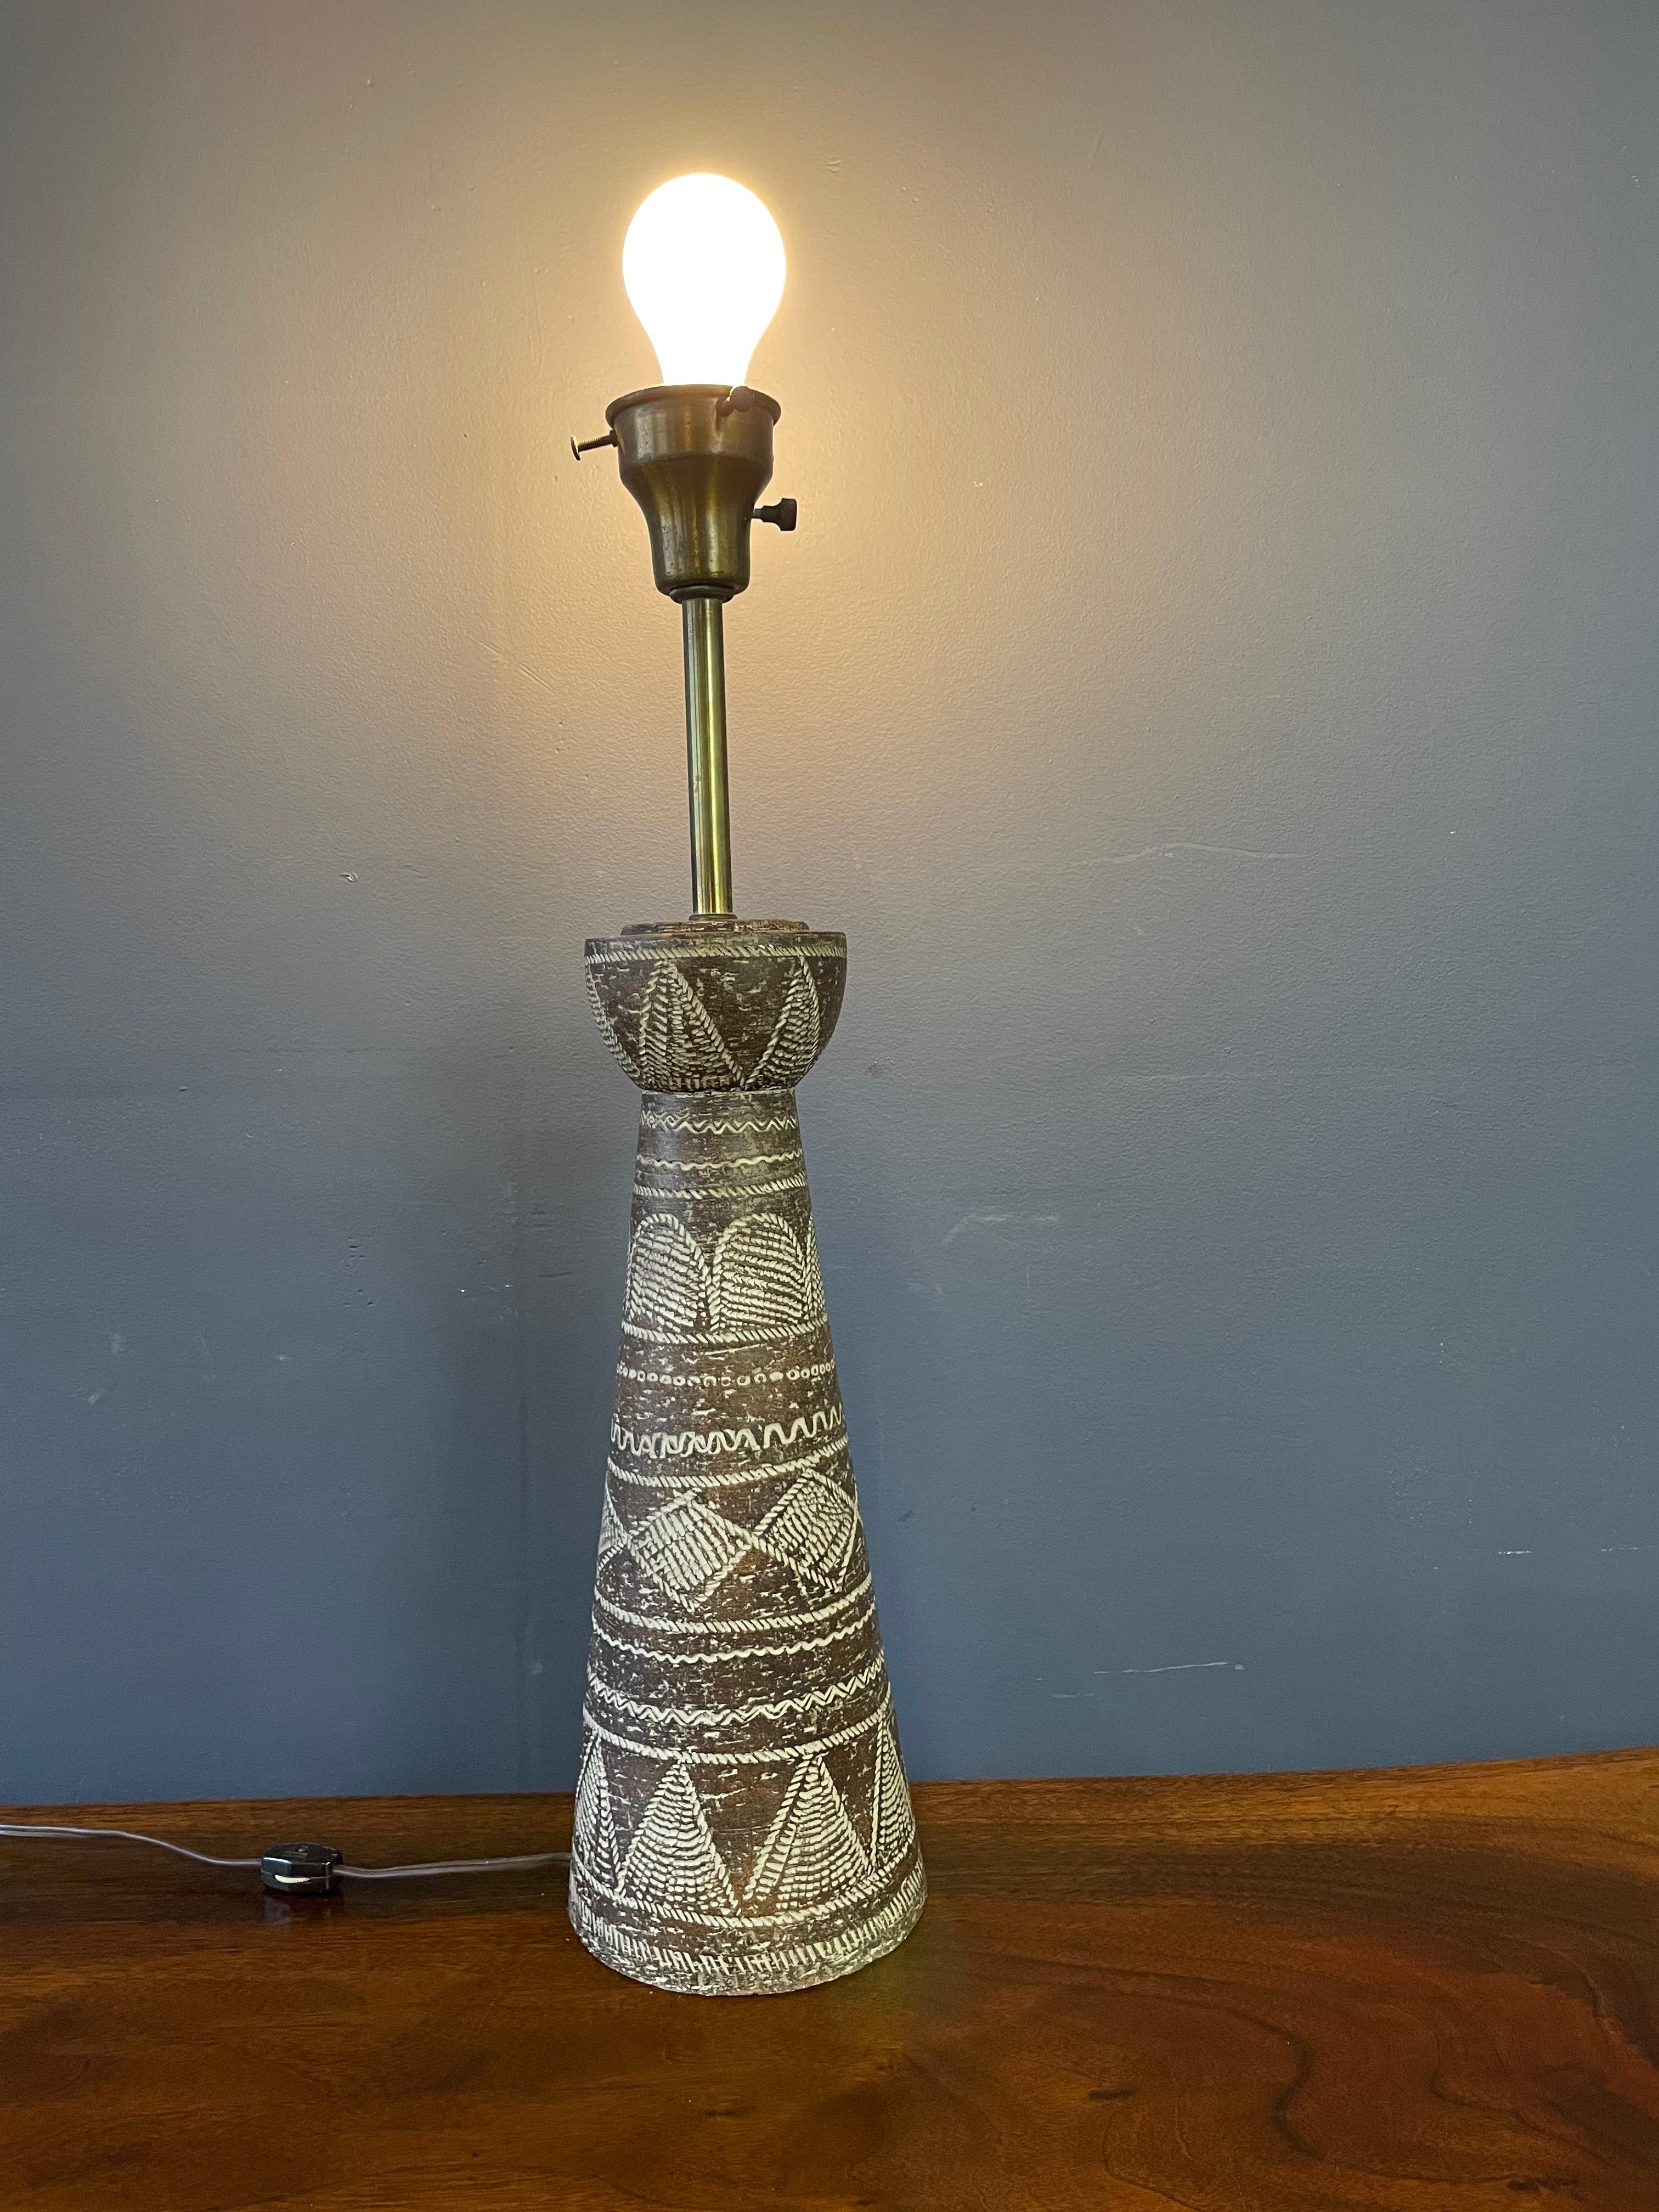 Ugo Zaccagnini Italian Ceramic Sgraffito Primative Design Table Lamp Mid Century In Good Condition For Sale In Philadelphia, PA